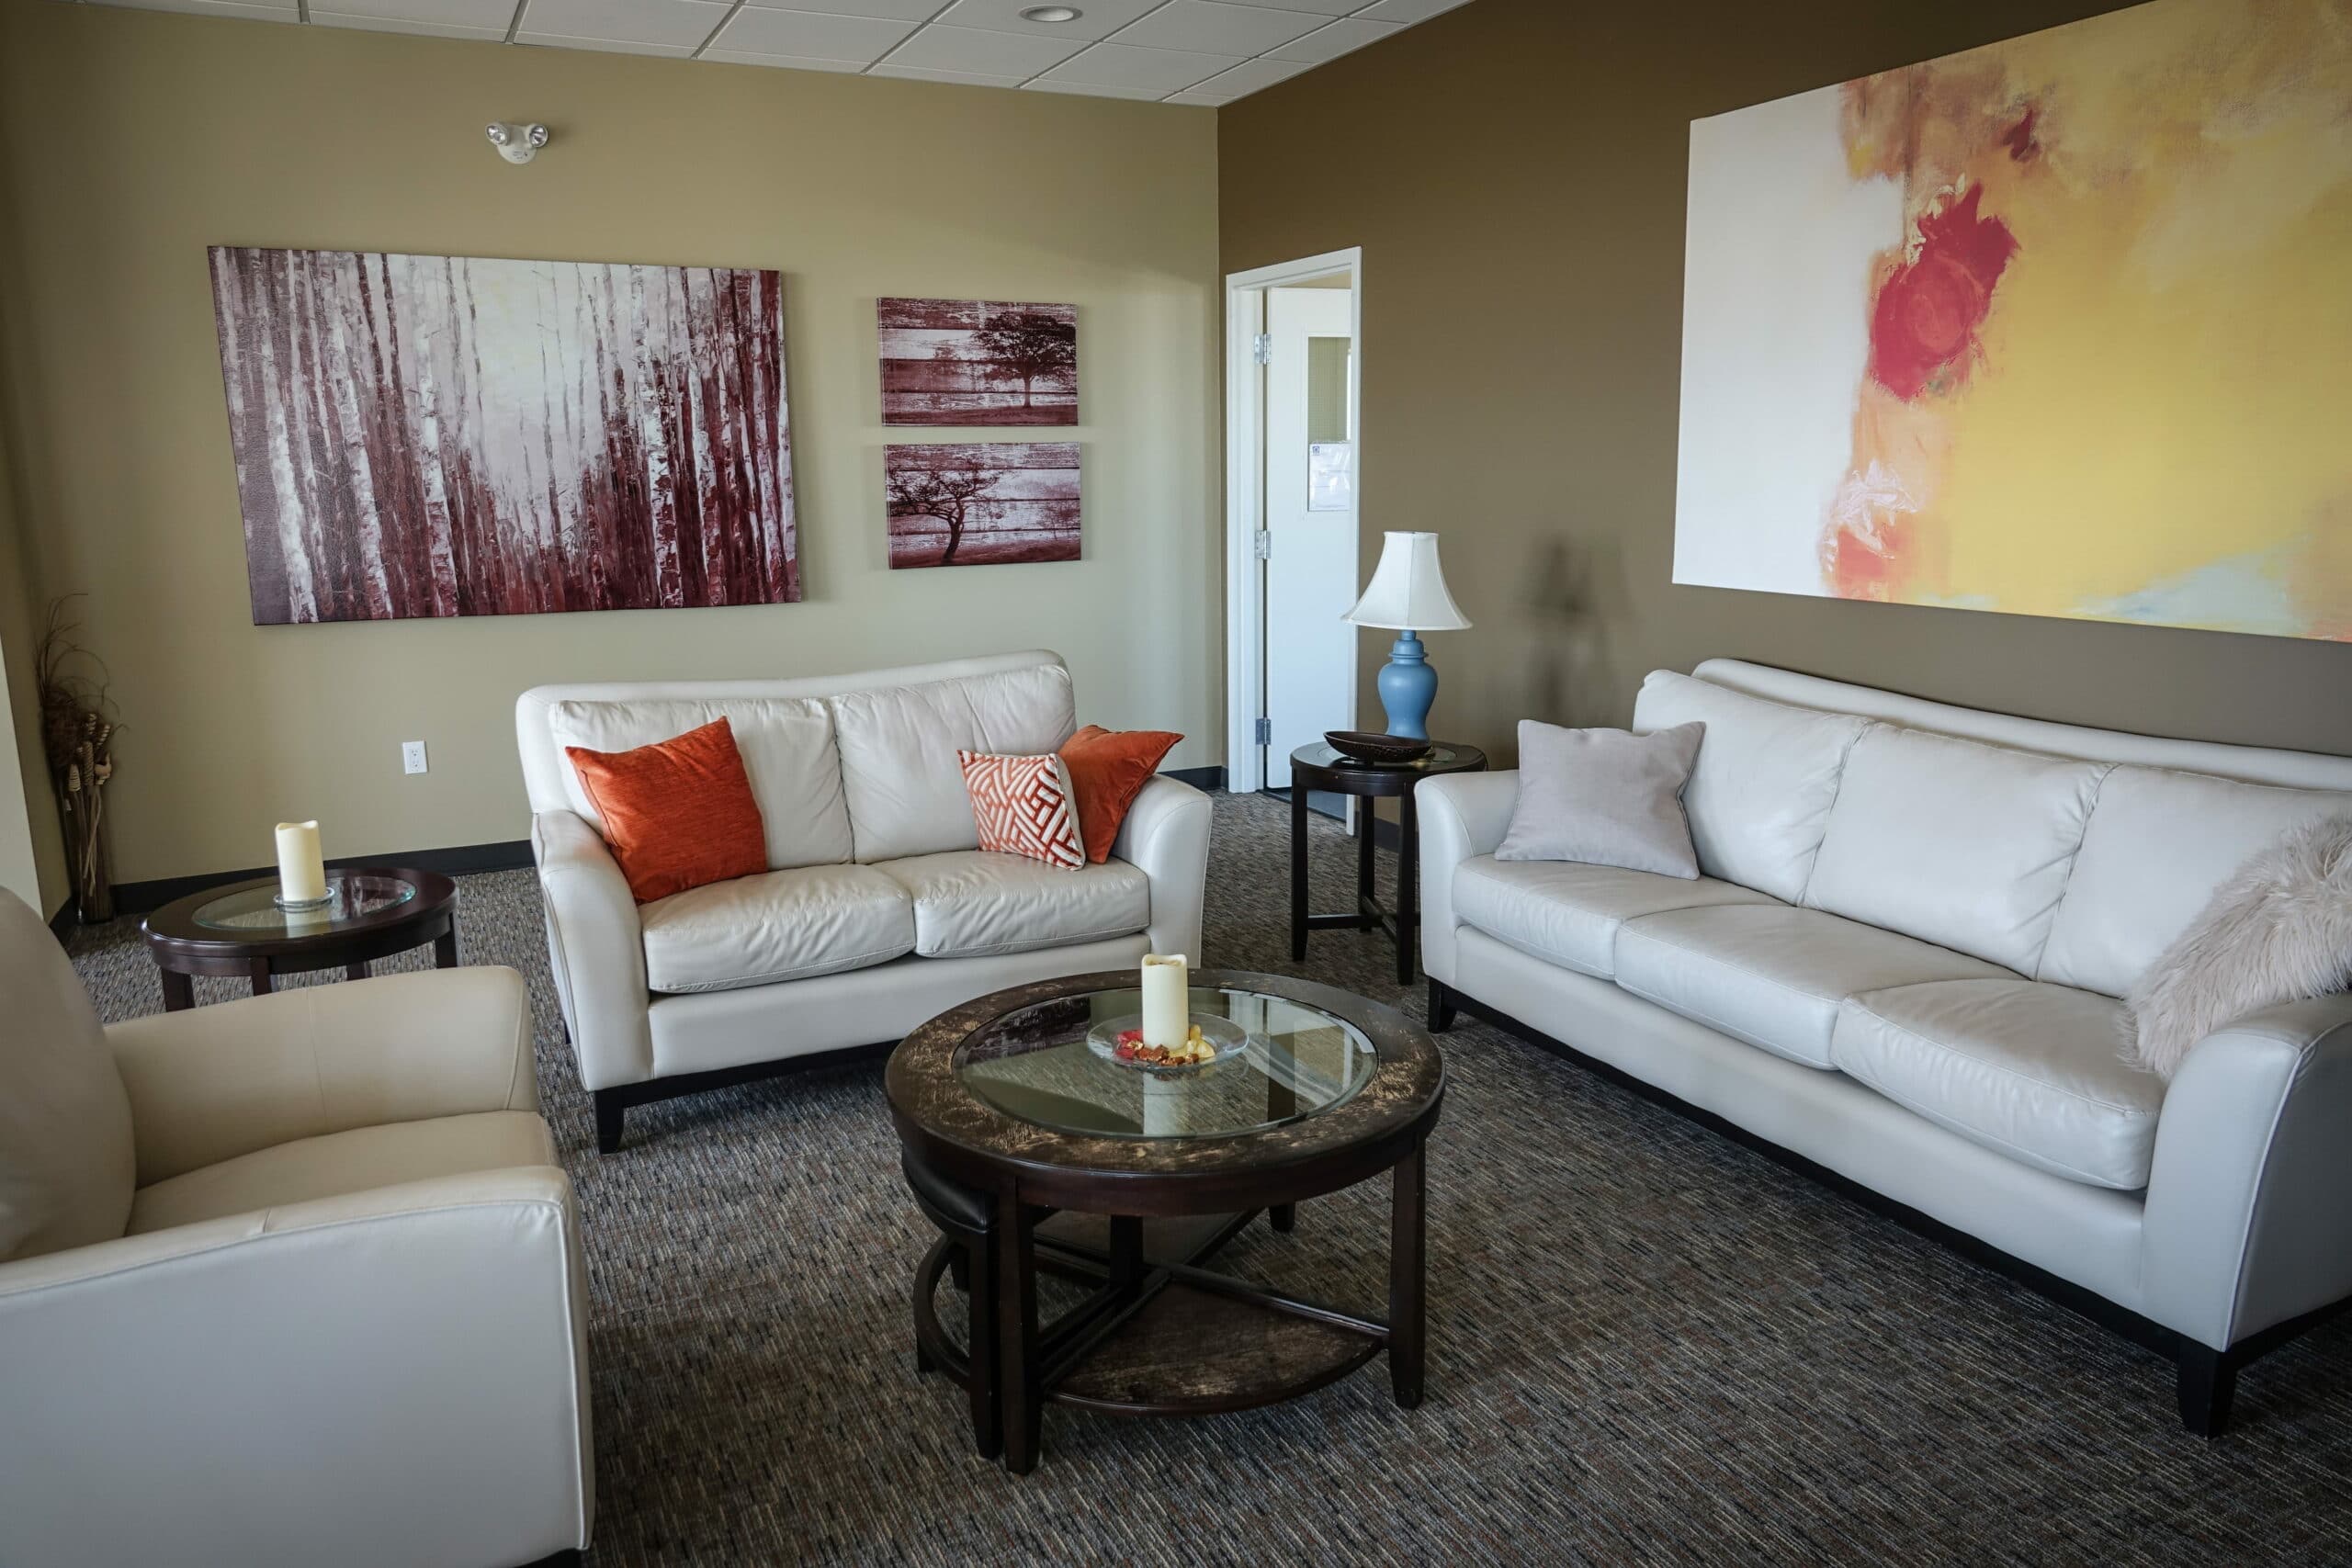 Sala de estar com quadros, tapete cinza, mesa de centro e sofás brancos. Imagem do conteúdo lavar sofá Salvador.